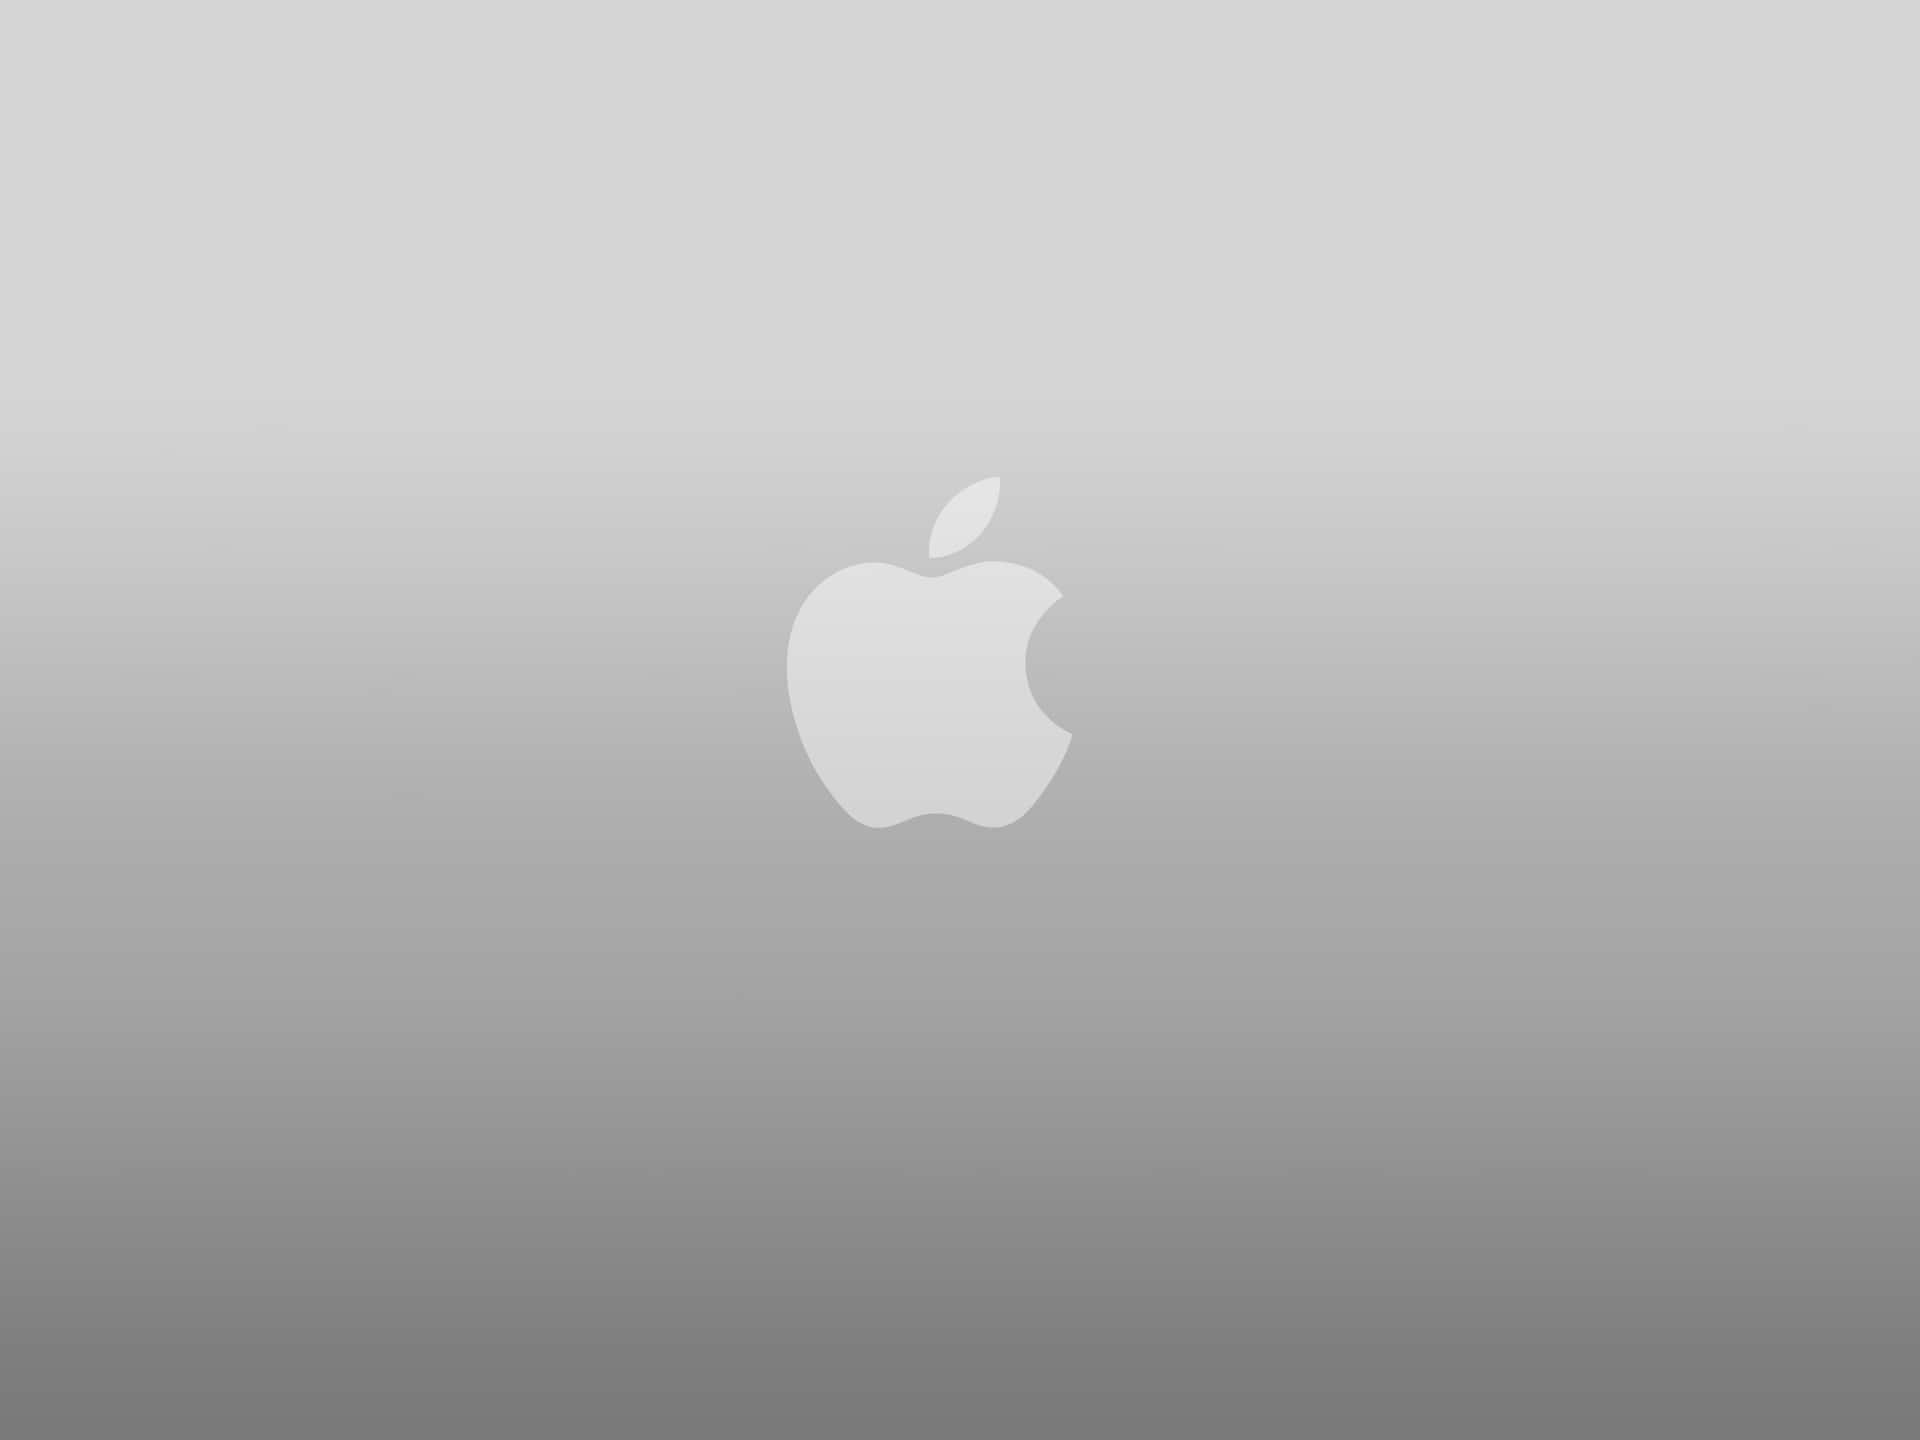 Dasikonische Apple-logo, Das Auf Dem Neuen Iphone X Abgebildet Ist. Wallpaper